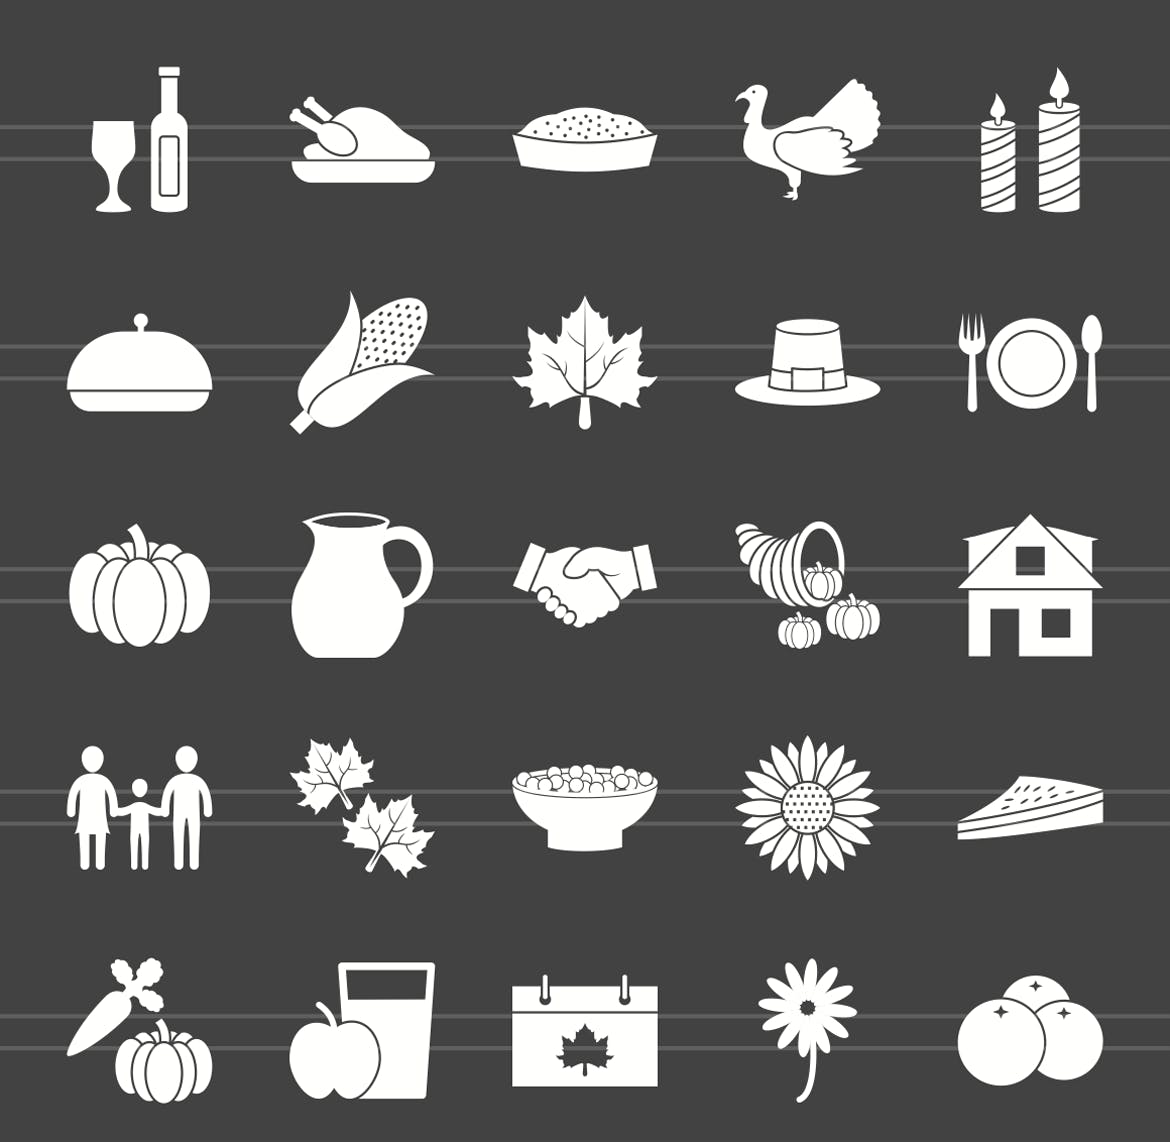 50枚感恩节主题反转色矢量字体素材库精选图标 50 Thanksgiving Glyph Inverted Icons插图(1)